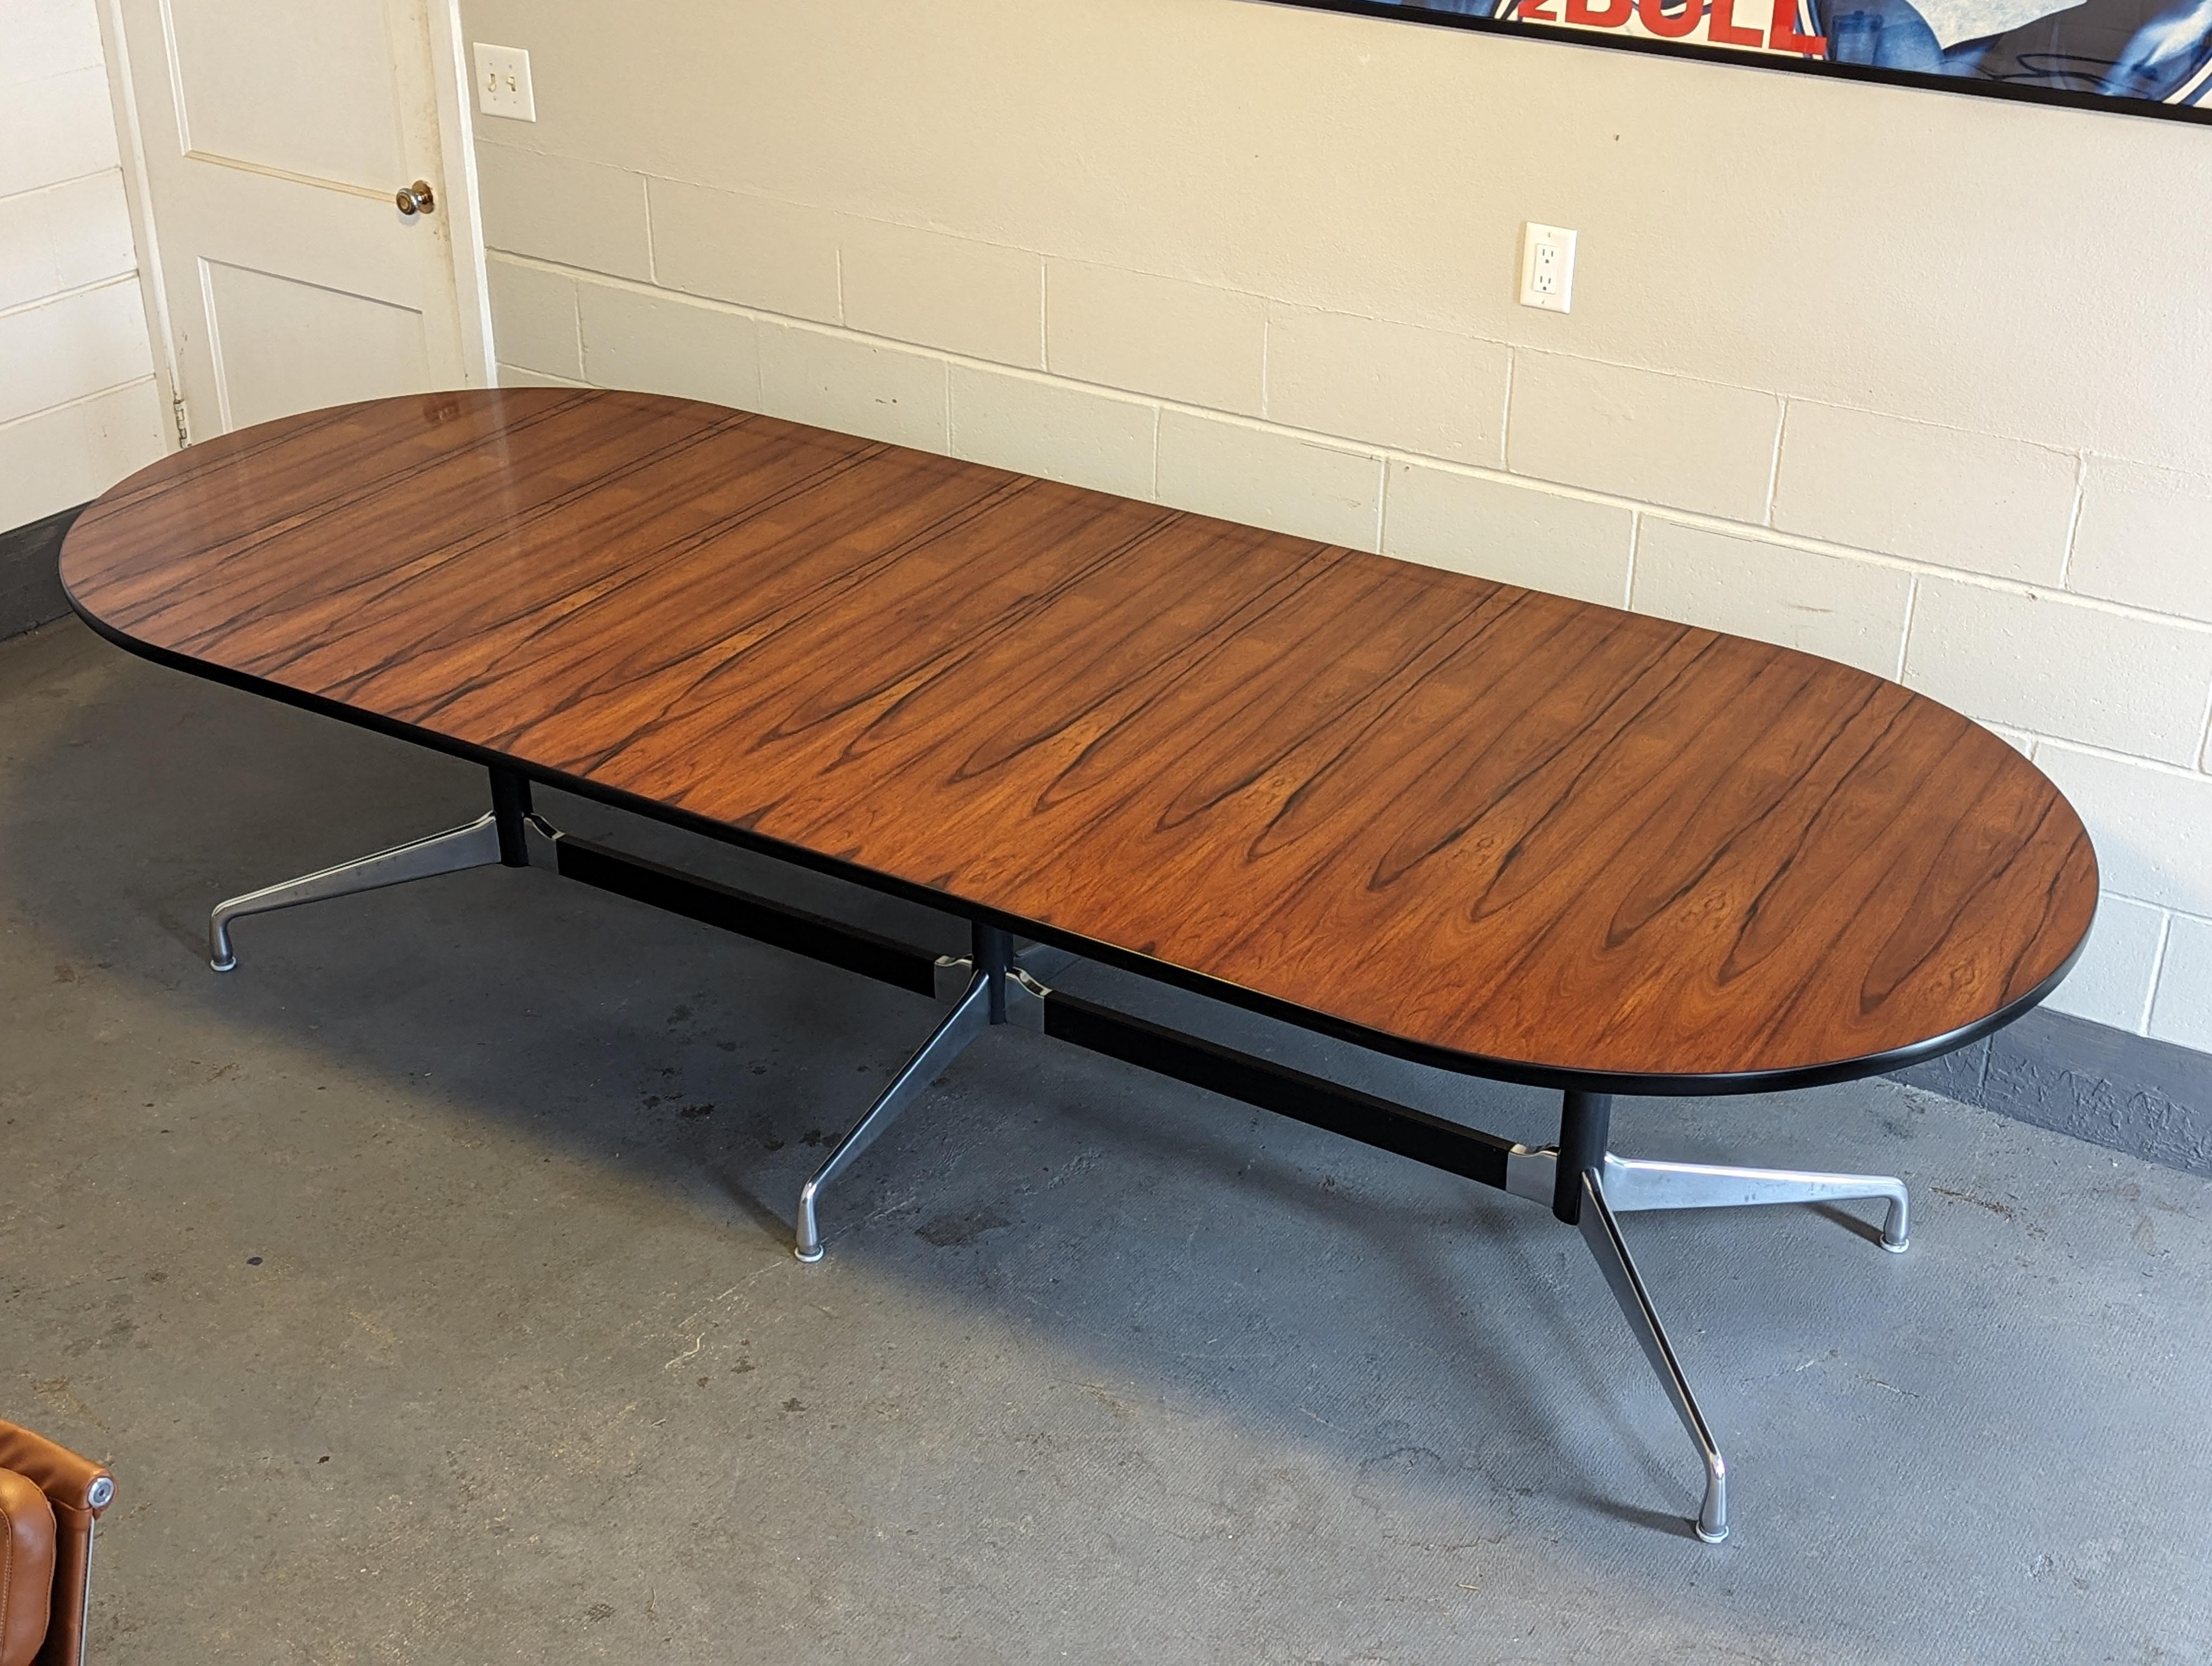 Atemberaubender 10-Fuß-Eames-Tisch mit segmentiertem Unterbau.

Unglaubliche Farbe und Maserung von Palisanderholz.

Füße und Sockel aus poliertem Aluminium bilden einen schönen Kontrast zu den schwarzen Stützen.

Ausgedehnte 118 